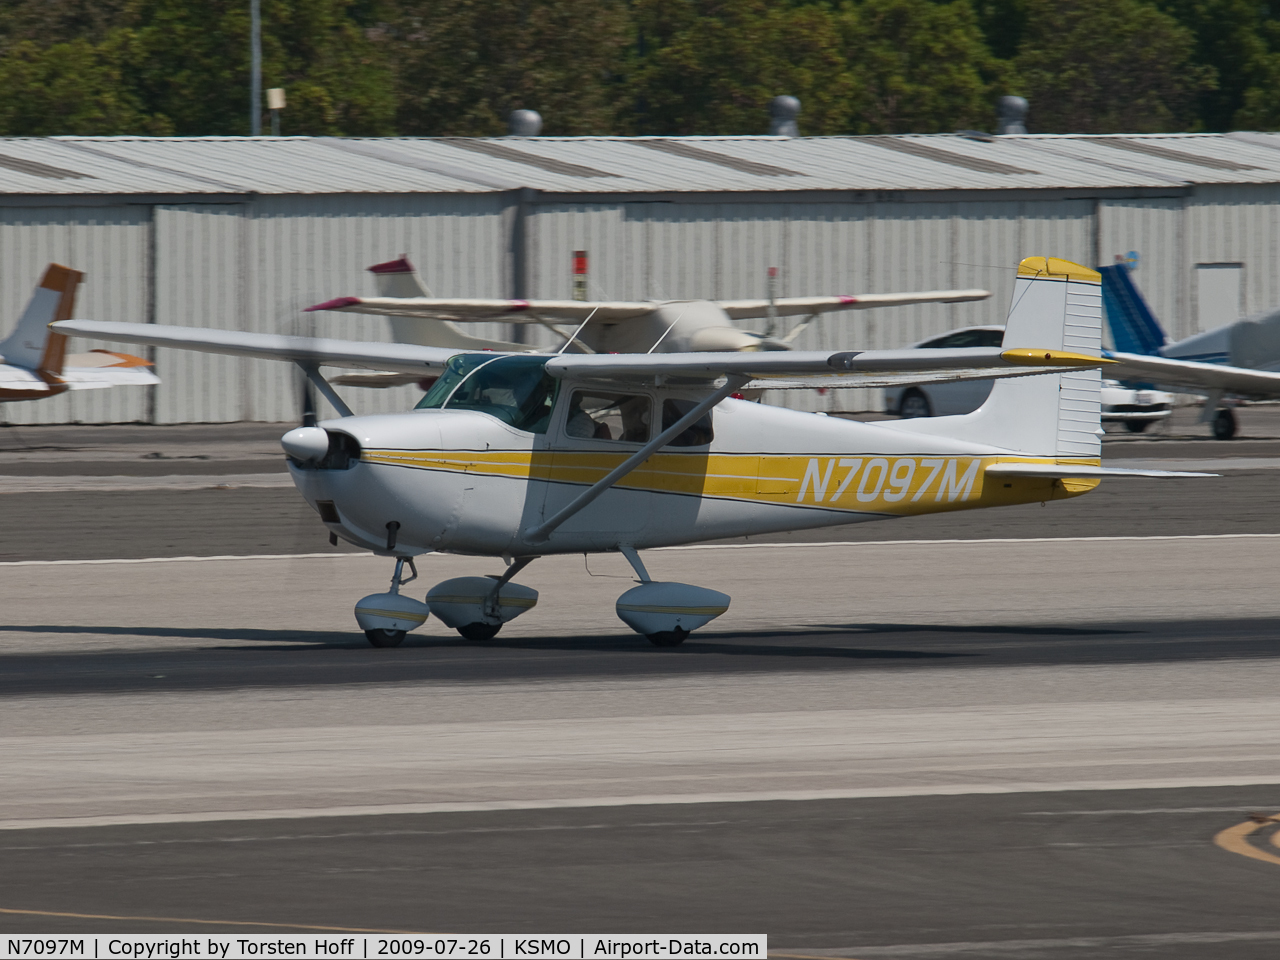 N7097M, 1958 Cessna 175 Skylark C/N 55397, N7097M departing from RWY 21